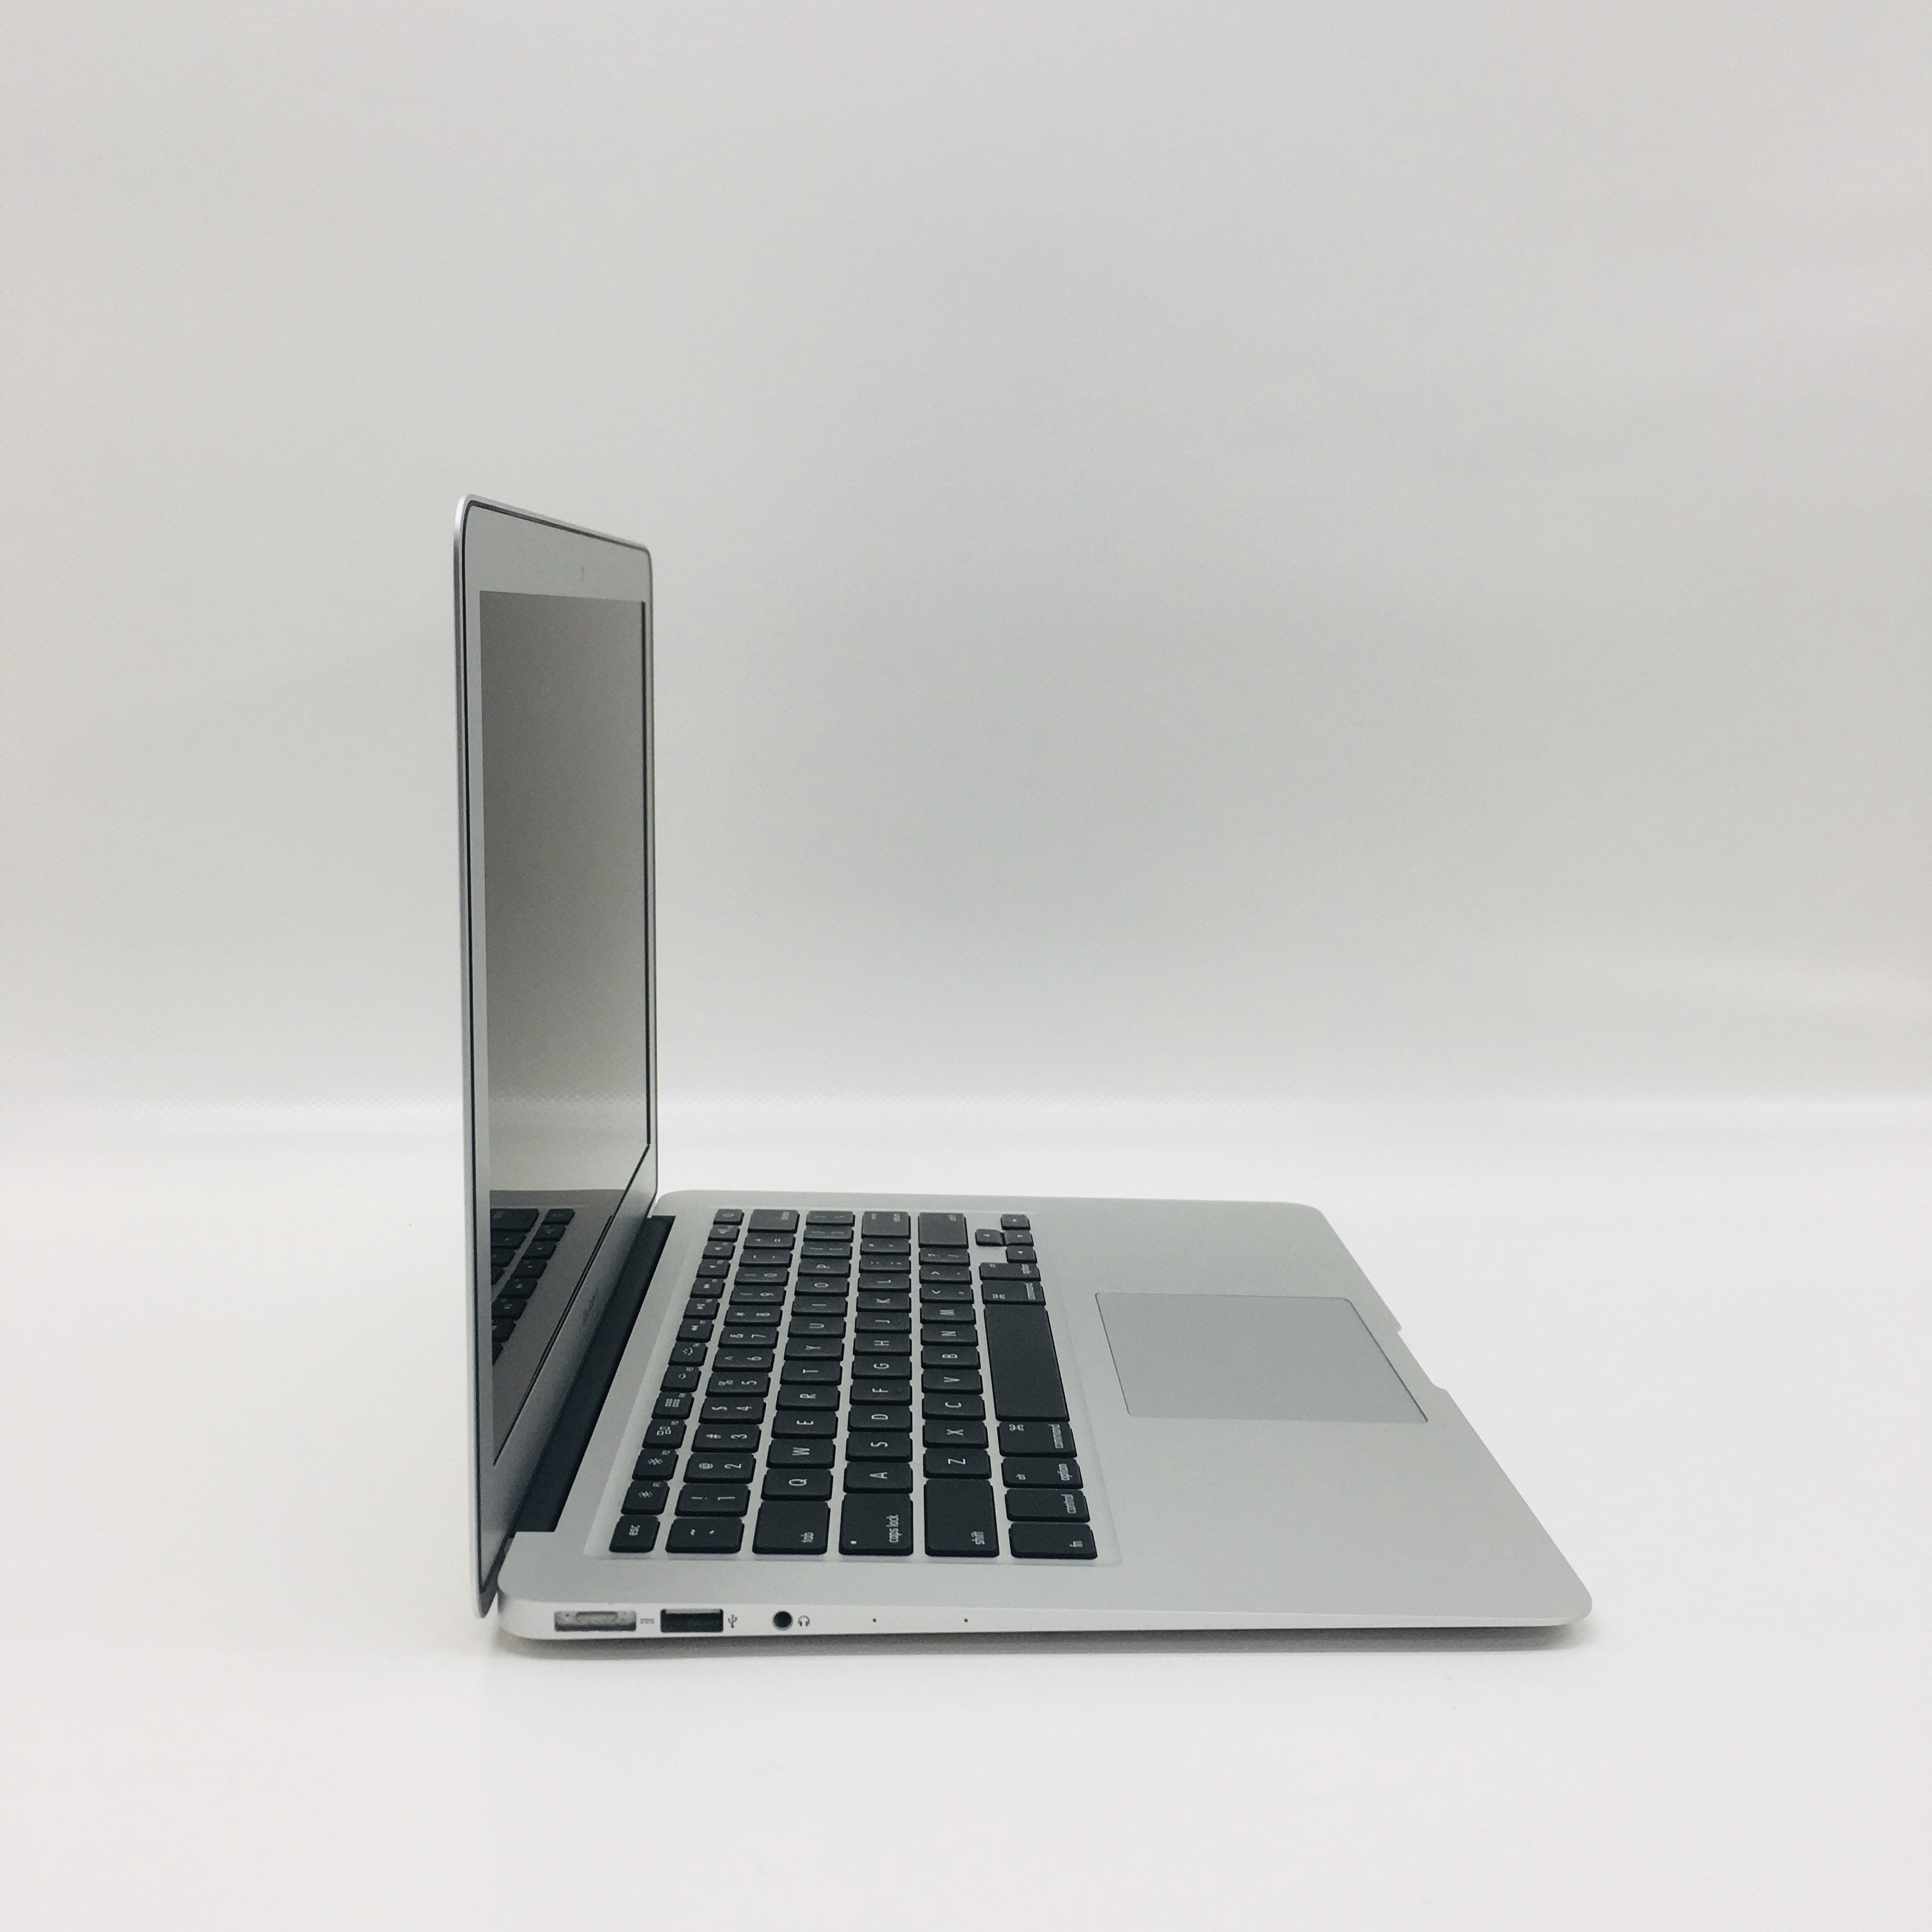 MacBook Air 13" Mid 2017 (Intel Core i5 1.8 GHz 8 GB RAM 512 GB SSD), Intel Core i5 1.8 GHz, 8 GB RAM, 512 GB SSD, image 4